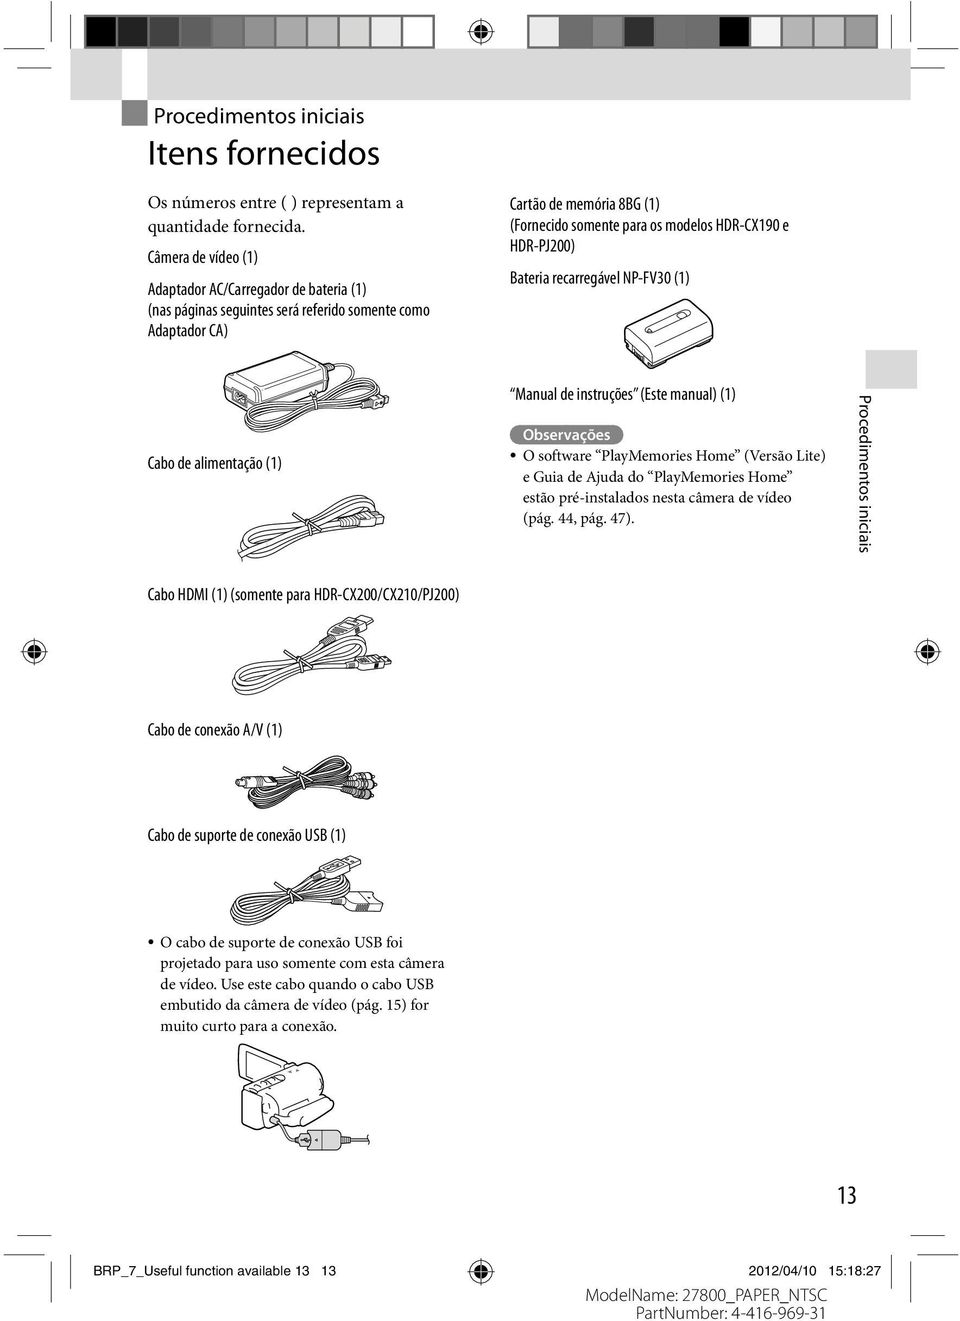 HDR-PJ200) Bateria recarregável NP-FV30 (1) Cabo de alimentação (1) Manual de instruções (Este manual) (1) Observações O software PlayMemories Home (Versão Lite) e Guia de Ajuda do PlayMemories Home